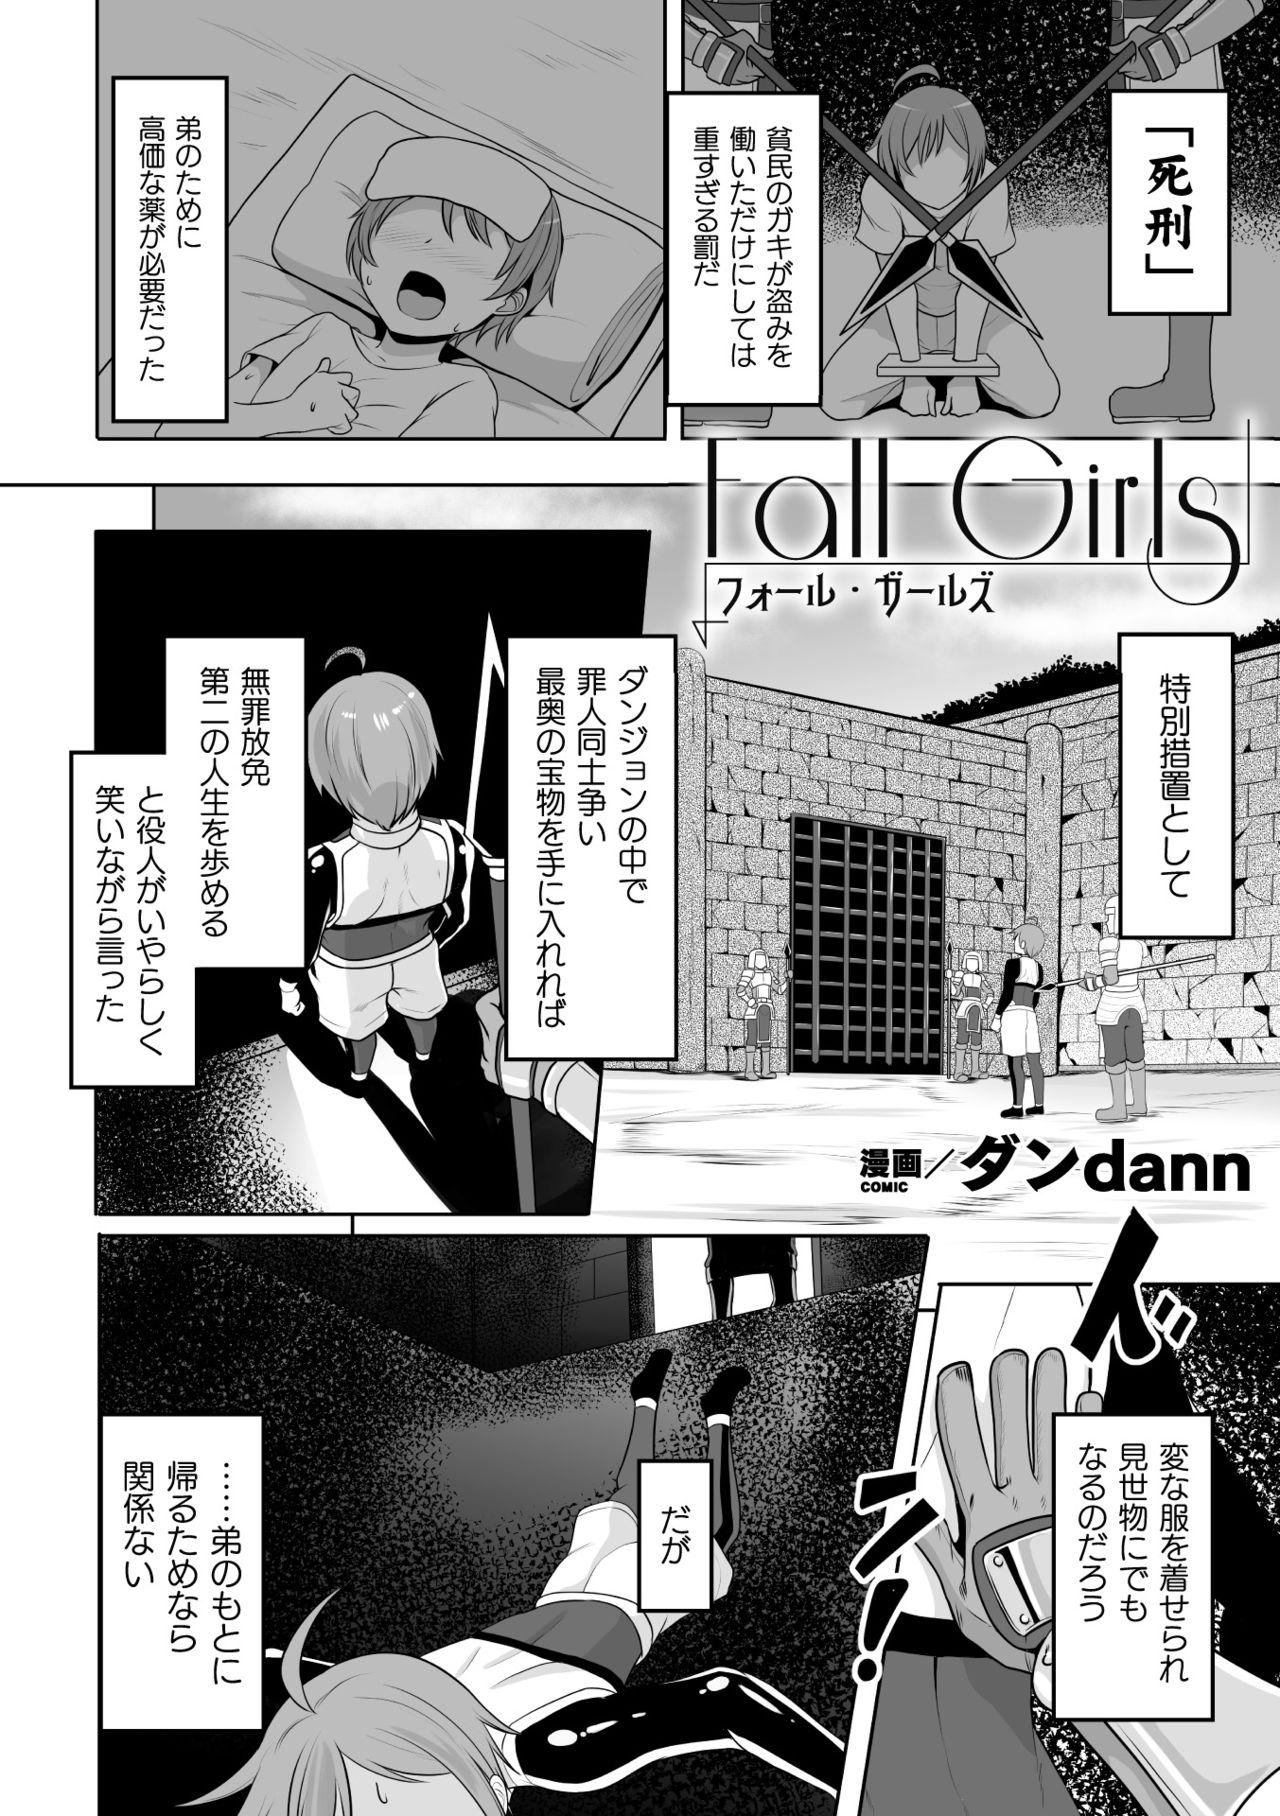 Mamadas 2D Comic Magazine Mesu Ochi! TS Ero Trap Dungeon Vol. 2 Butt Fuck - Page 4